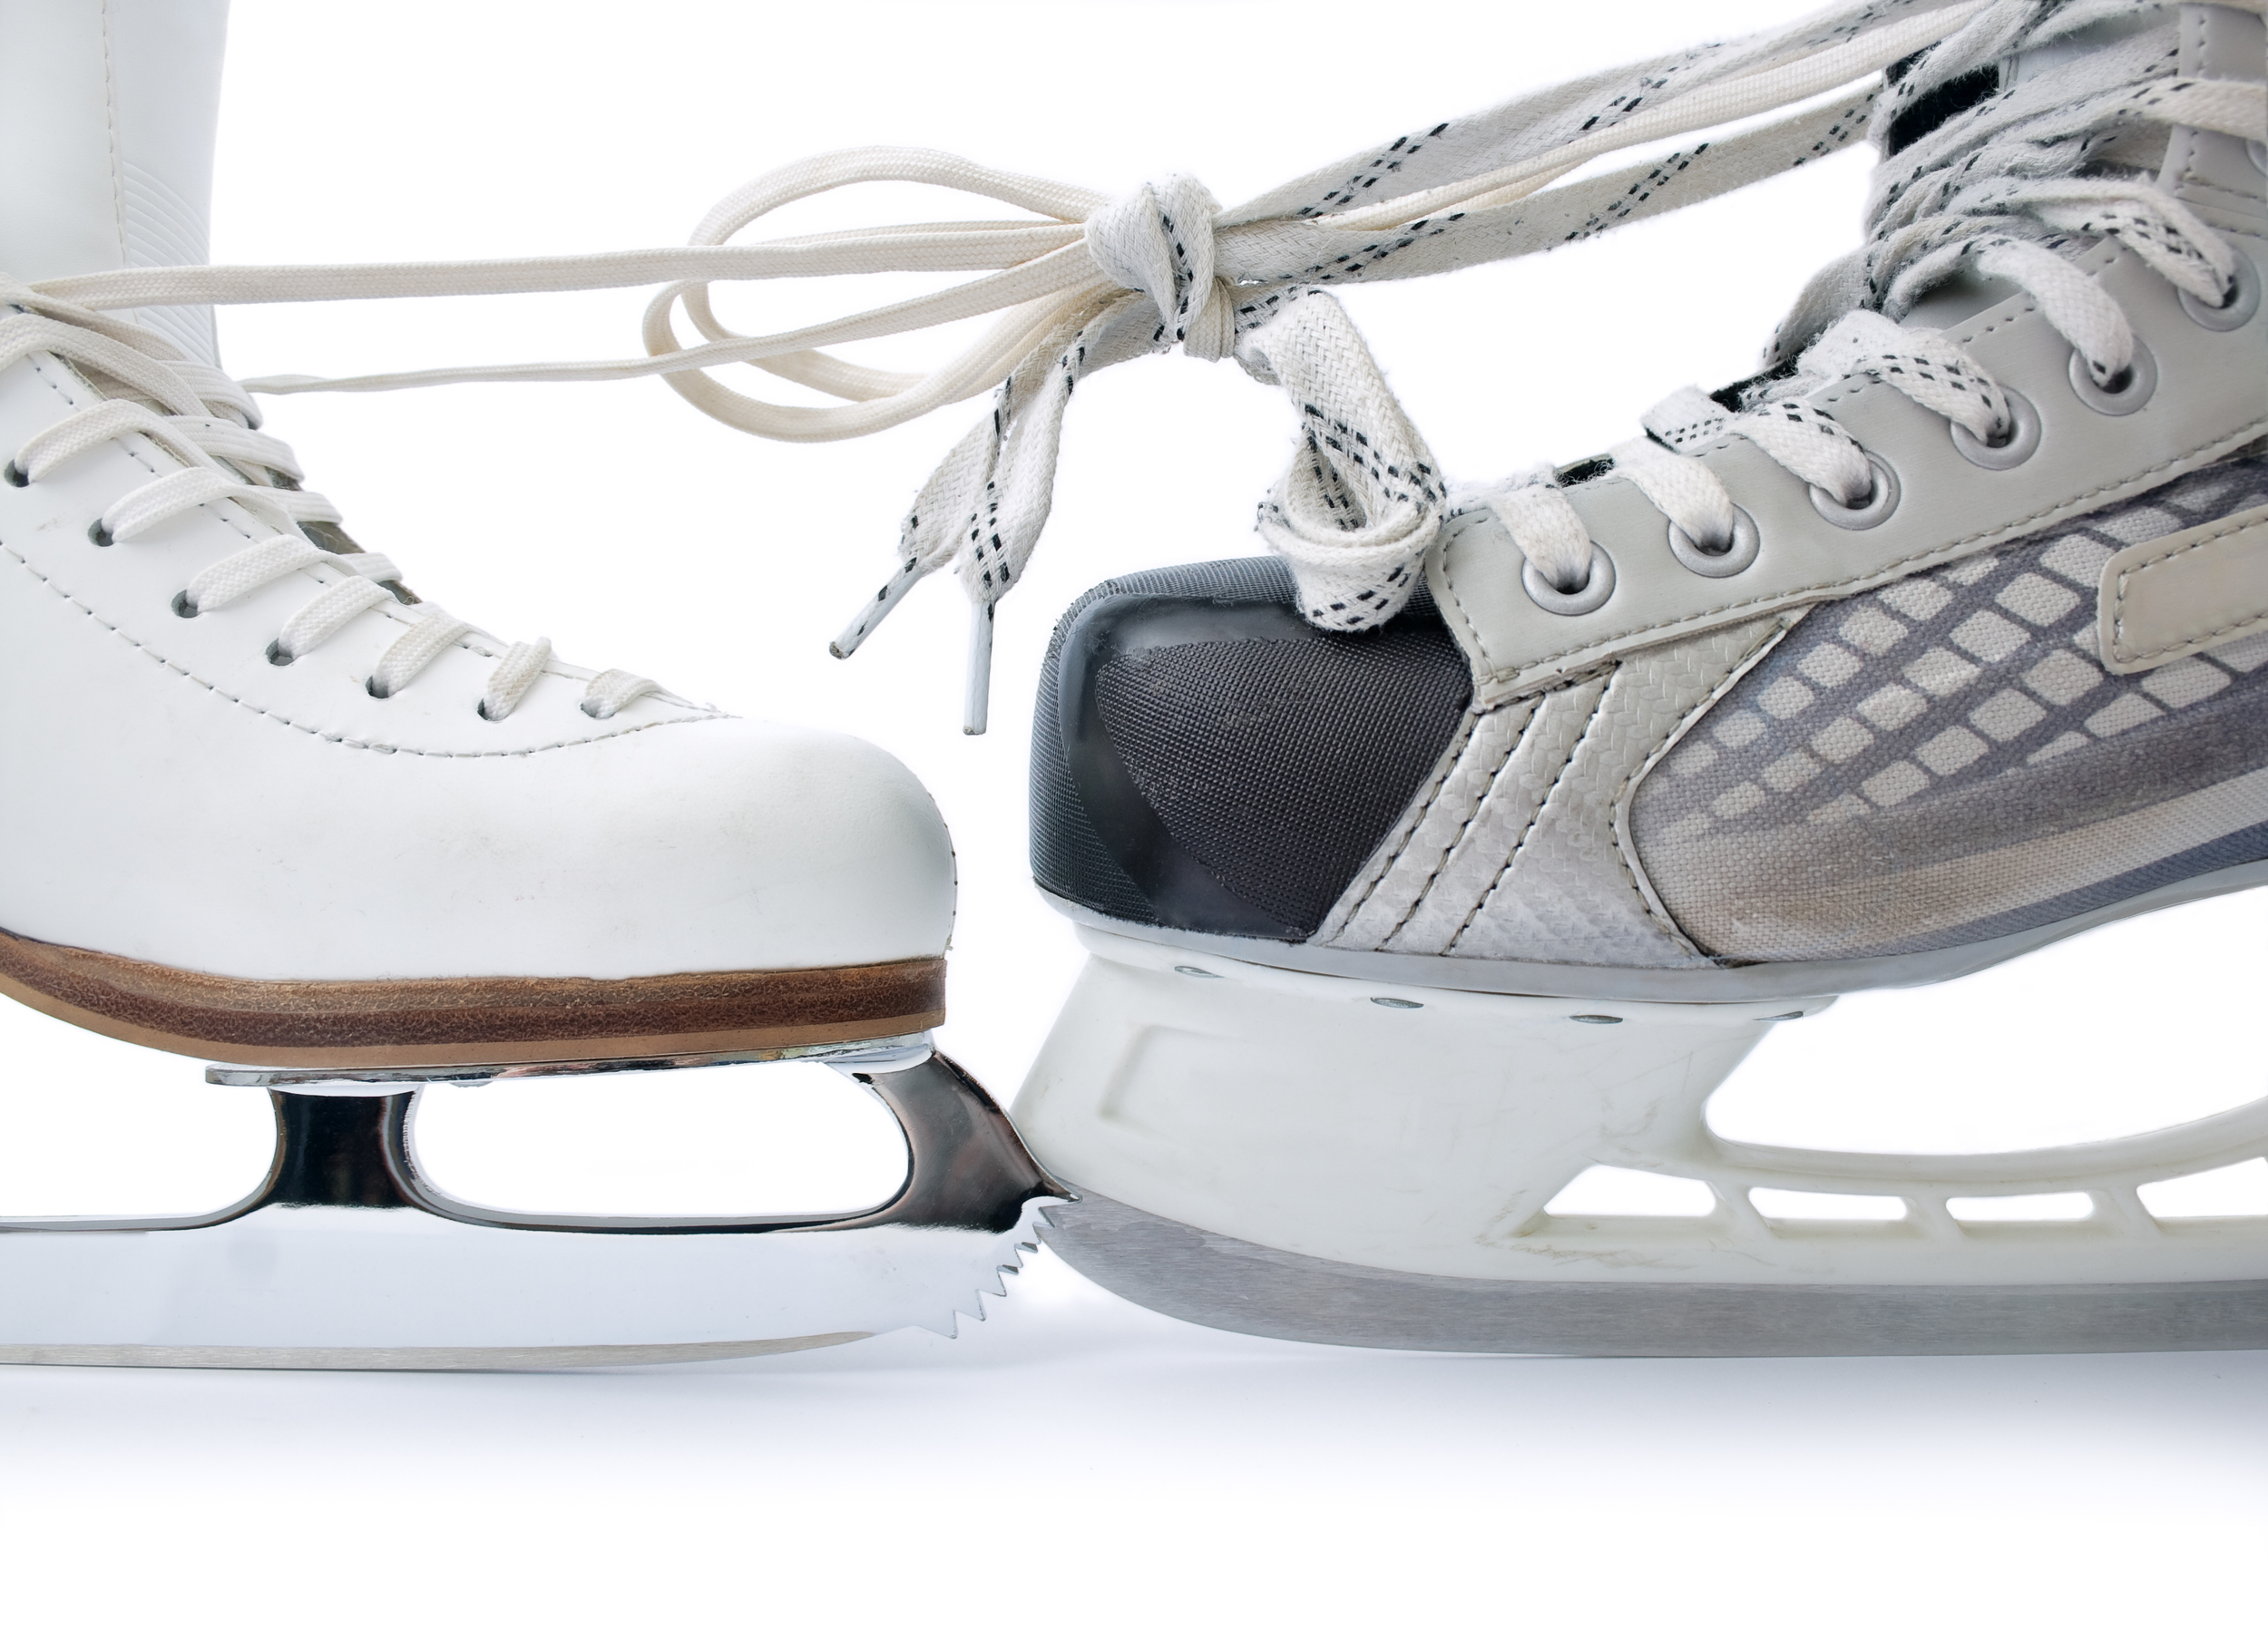 T TOOYFUL Compact Skate Sharpener For Figure Skate/Dance Ice Skate/Ice Hockey Skate